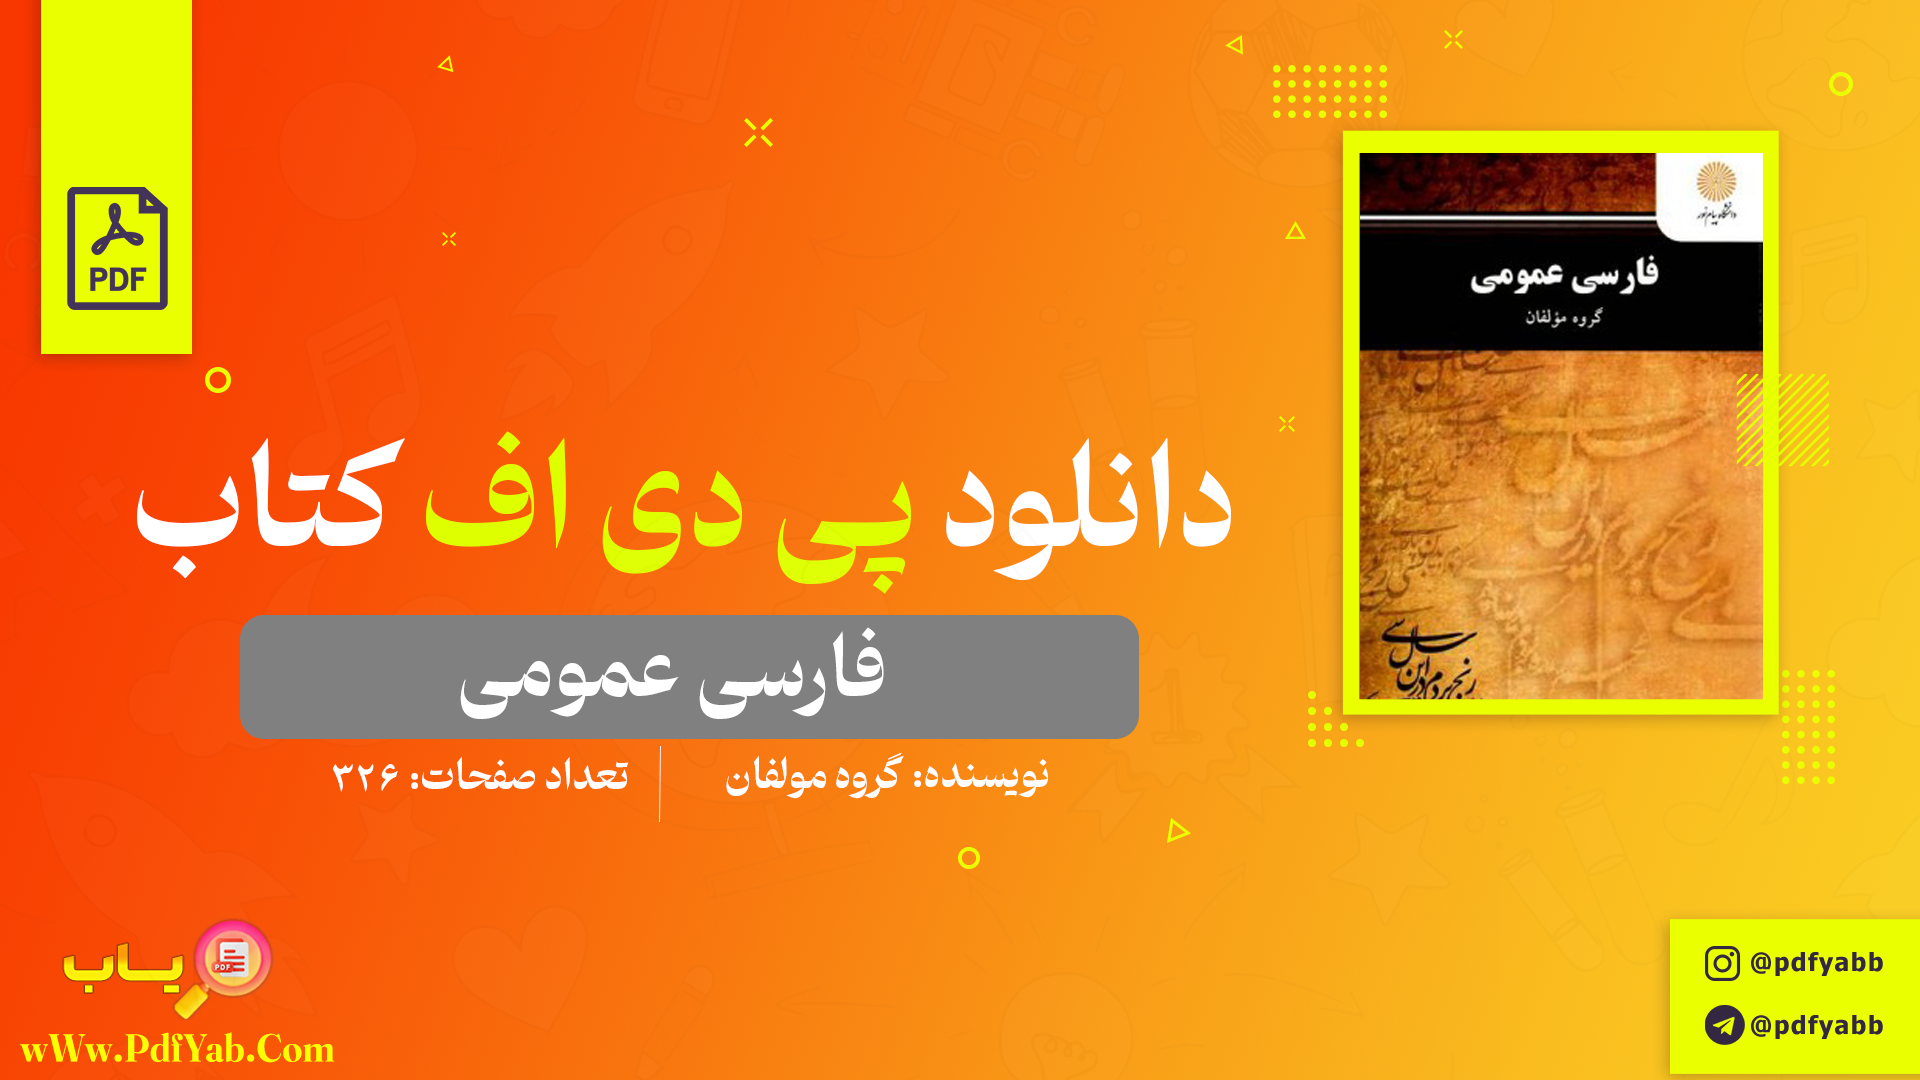 کتاب فارسی عمومی گروه مولفان دانلود PDF